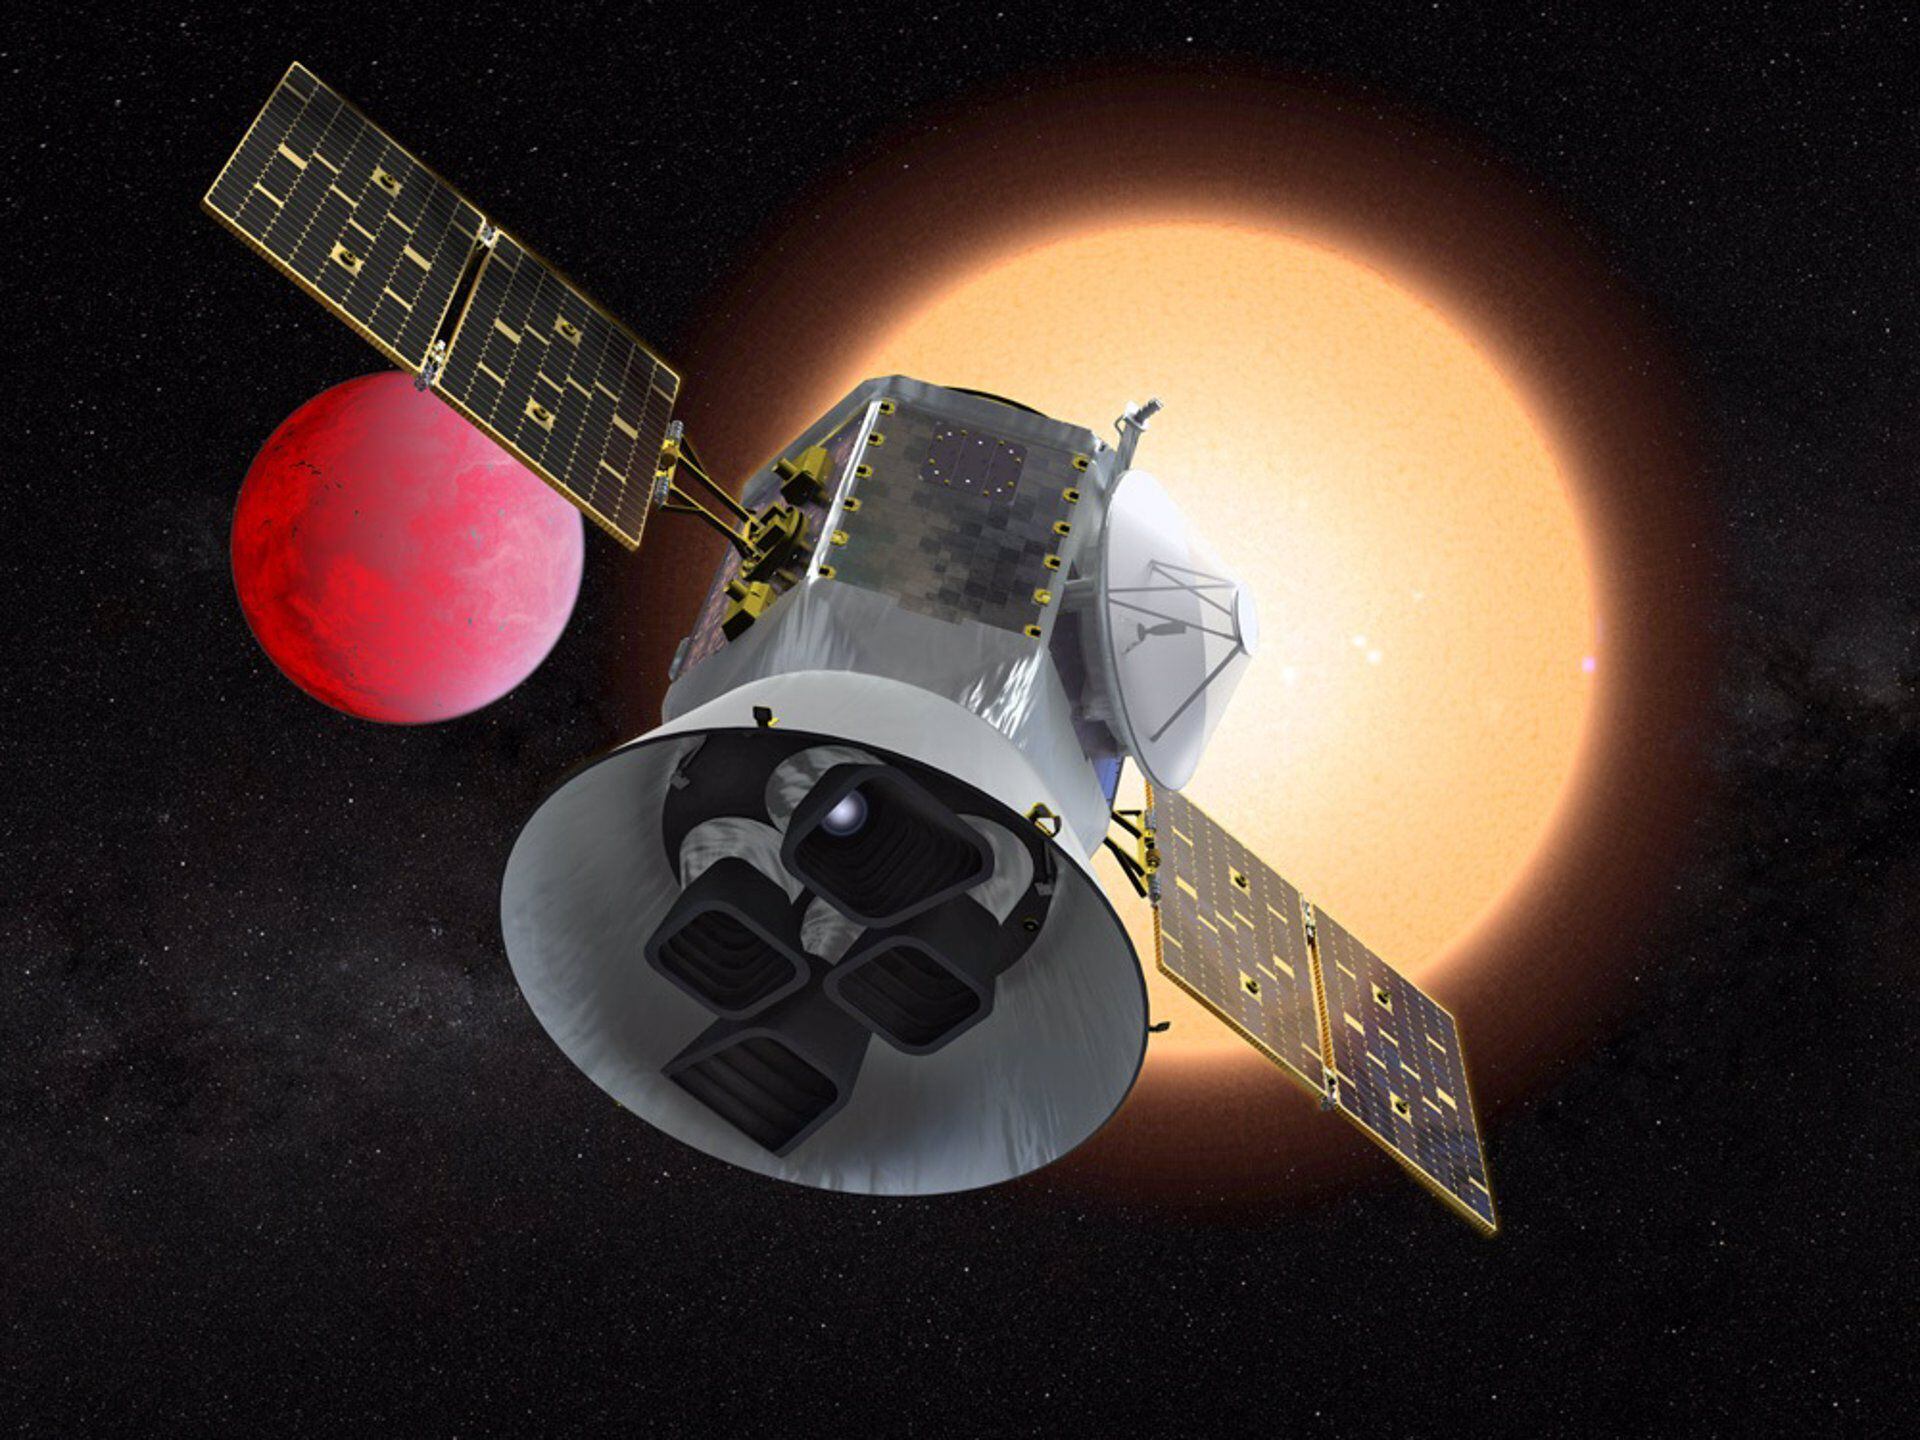 La NASA ha lanzado una serie de misiones no tripuladas para estudiar otros planetas del sistema solar. / POLITICA INVESTIGACIÓN Y TECNOLOGÍA NASA